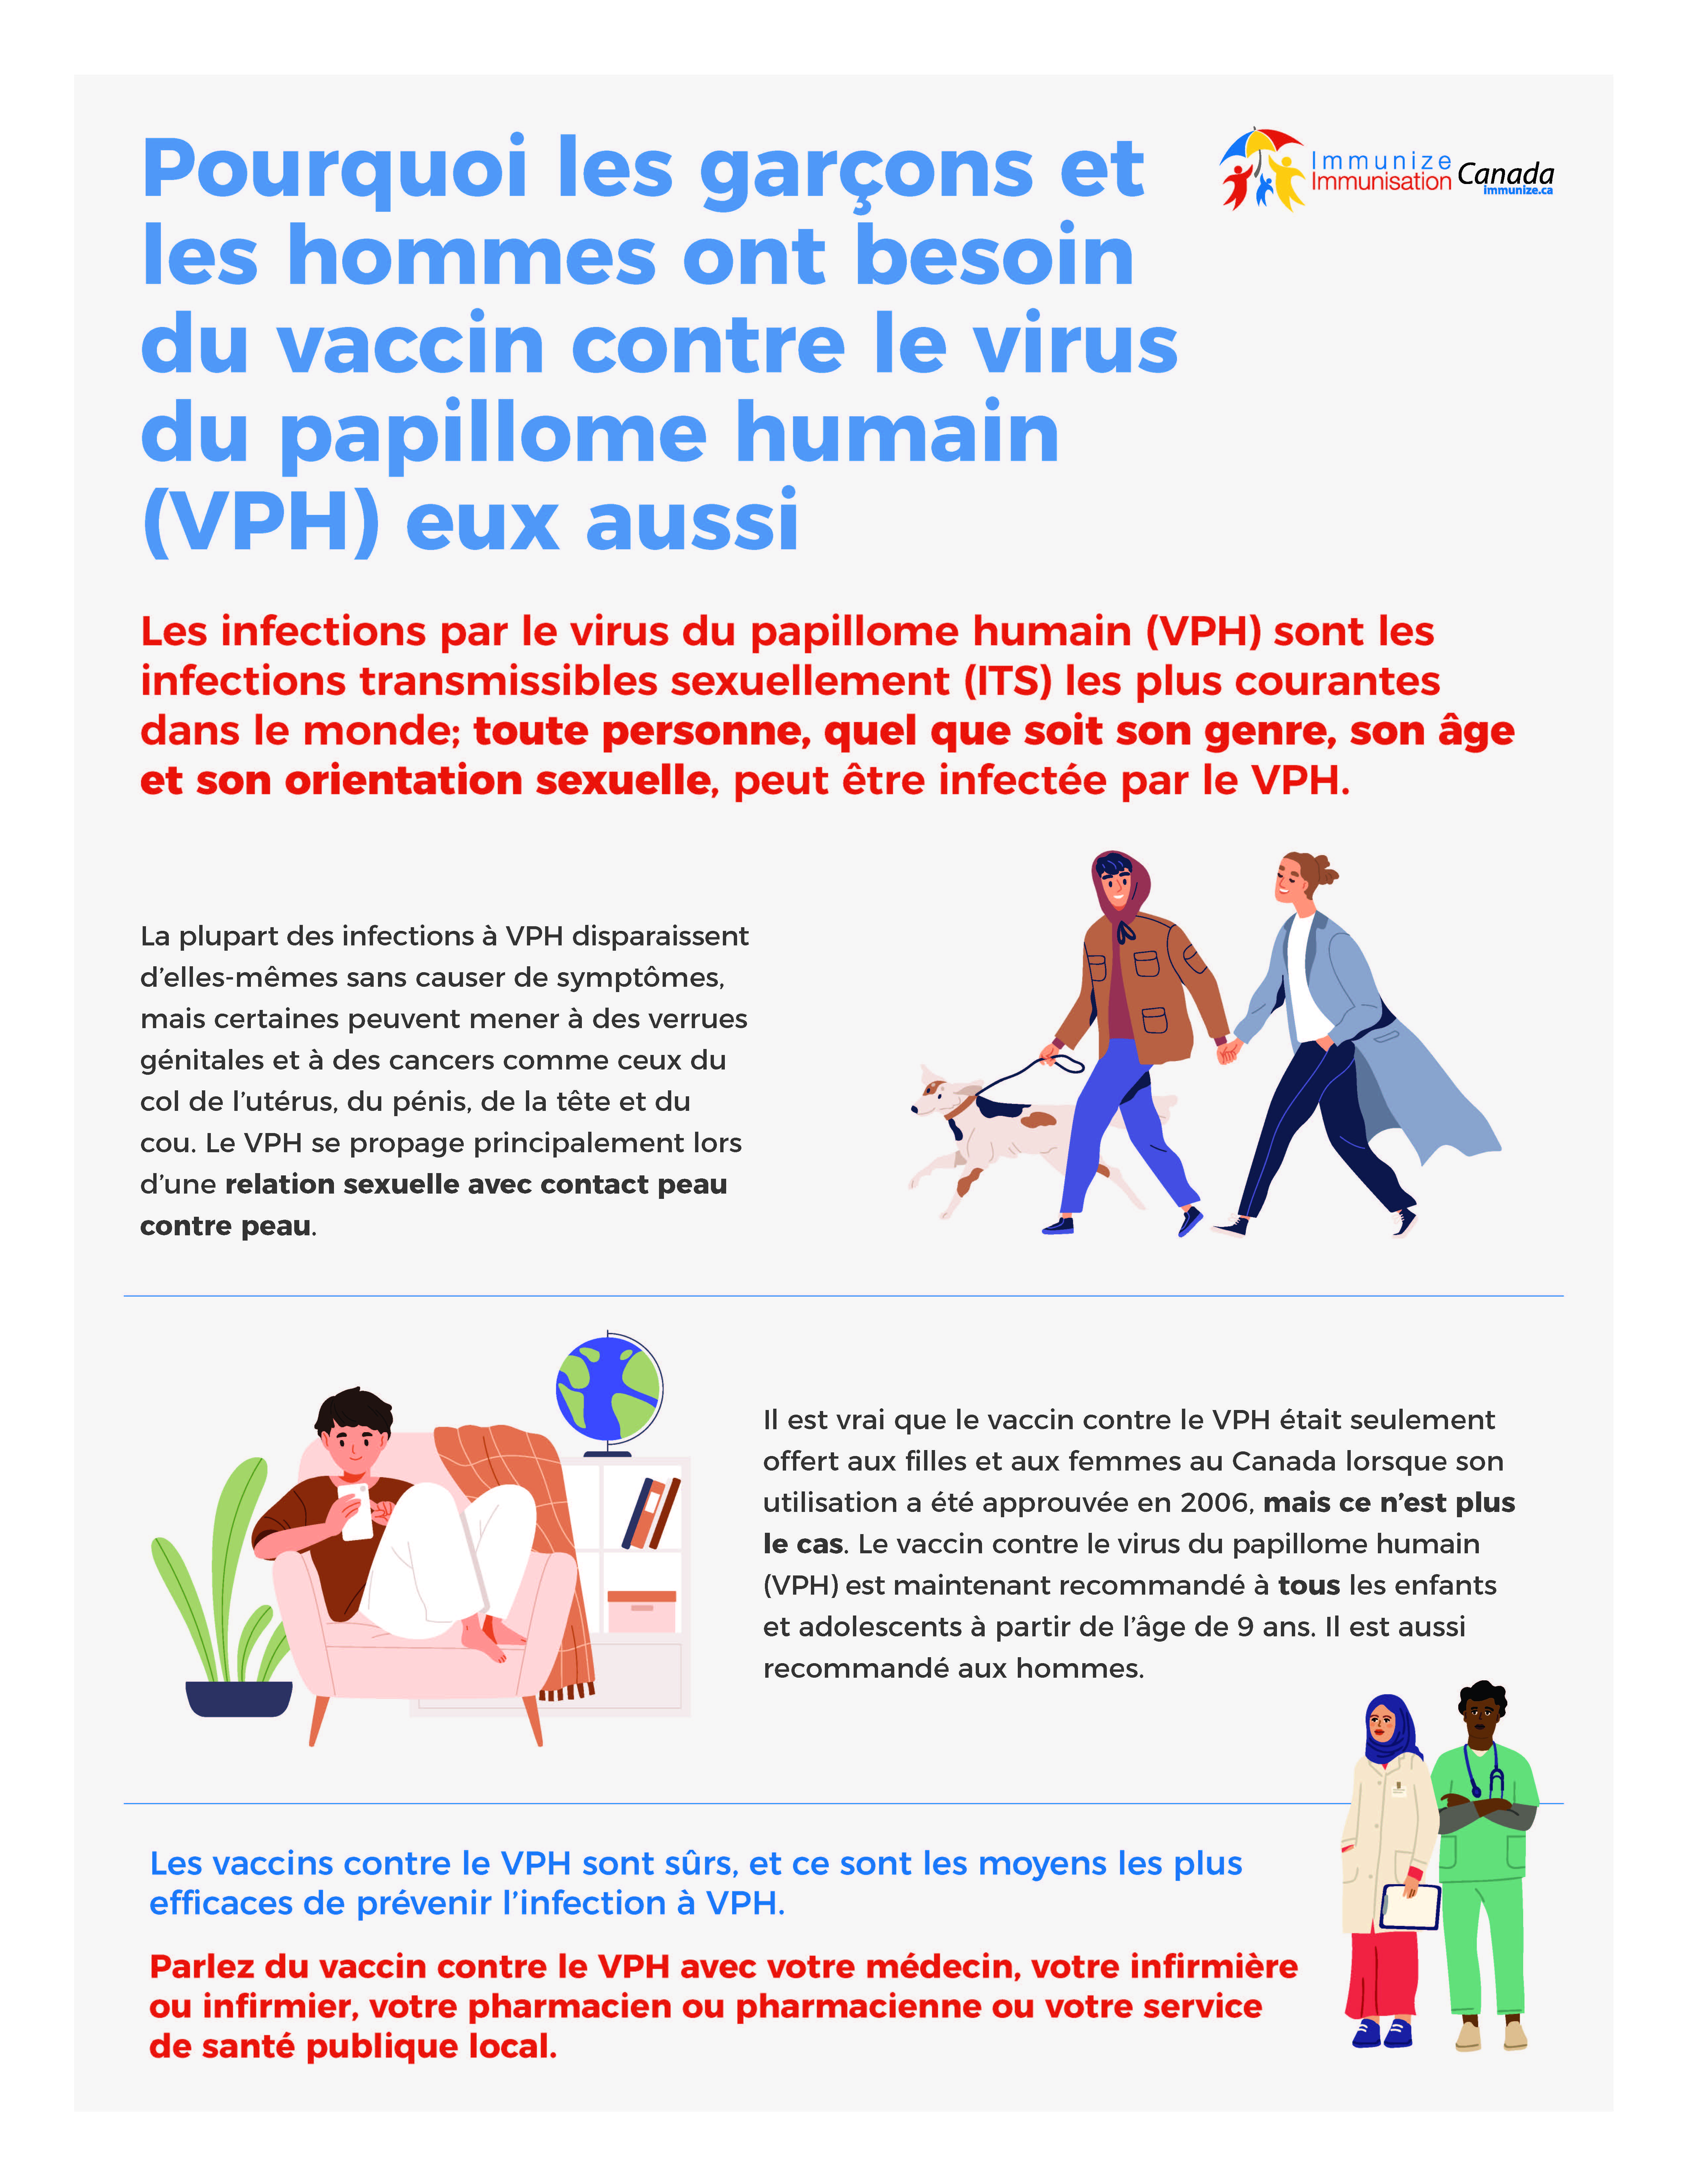 Pourquoi les garçons et les hommes ont besoin du vaccin contre le virus du papillome humain (VPH) eux aussi